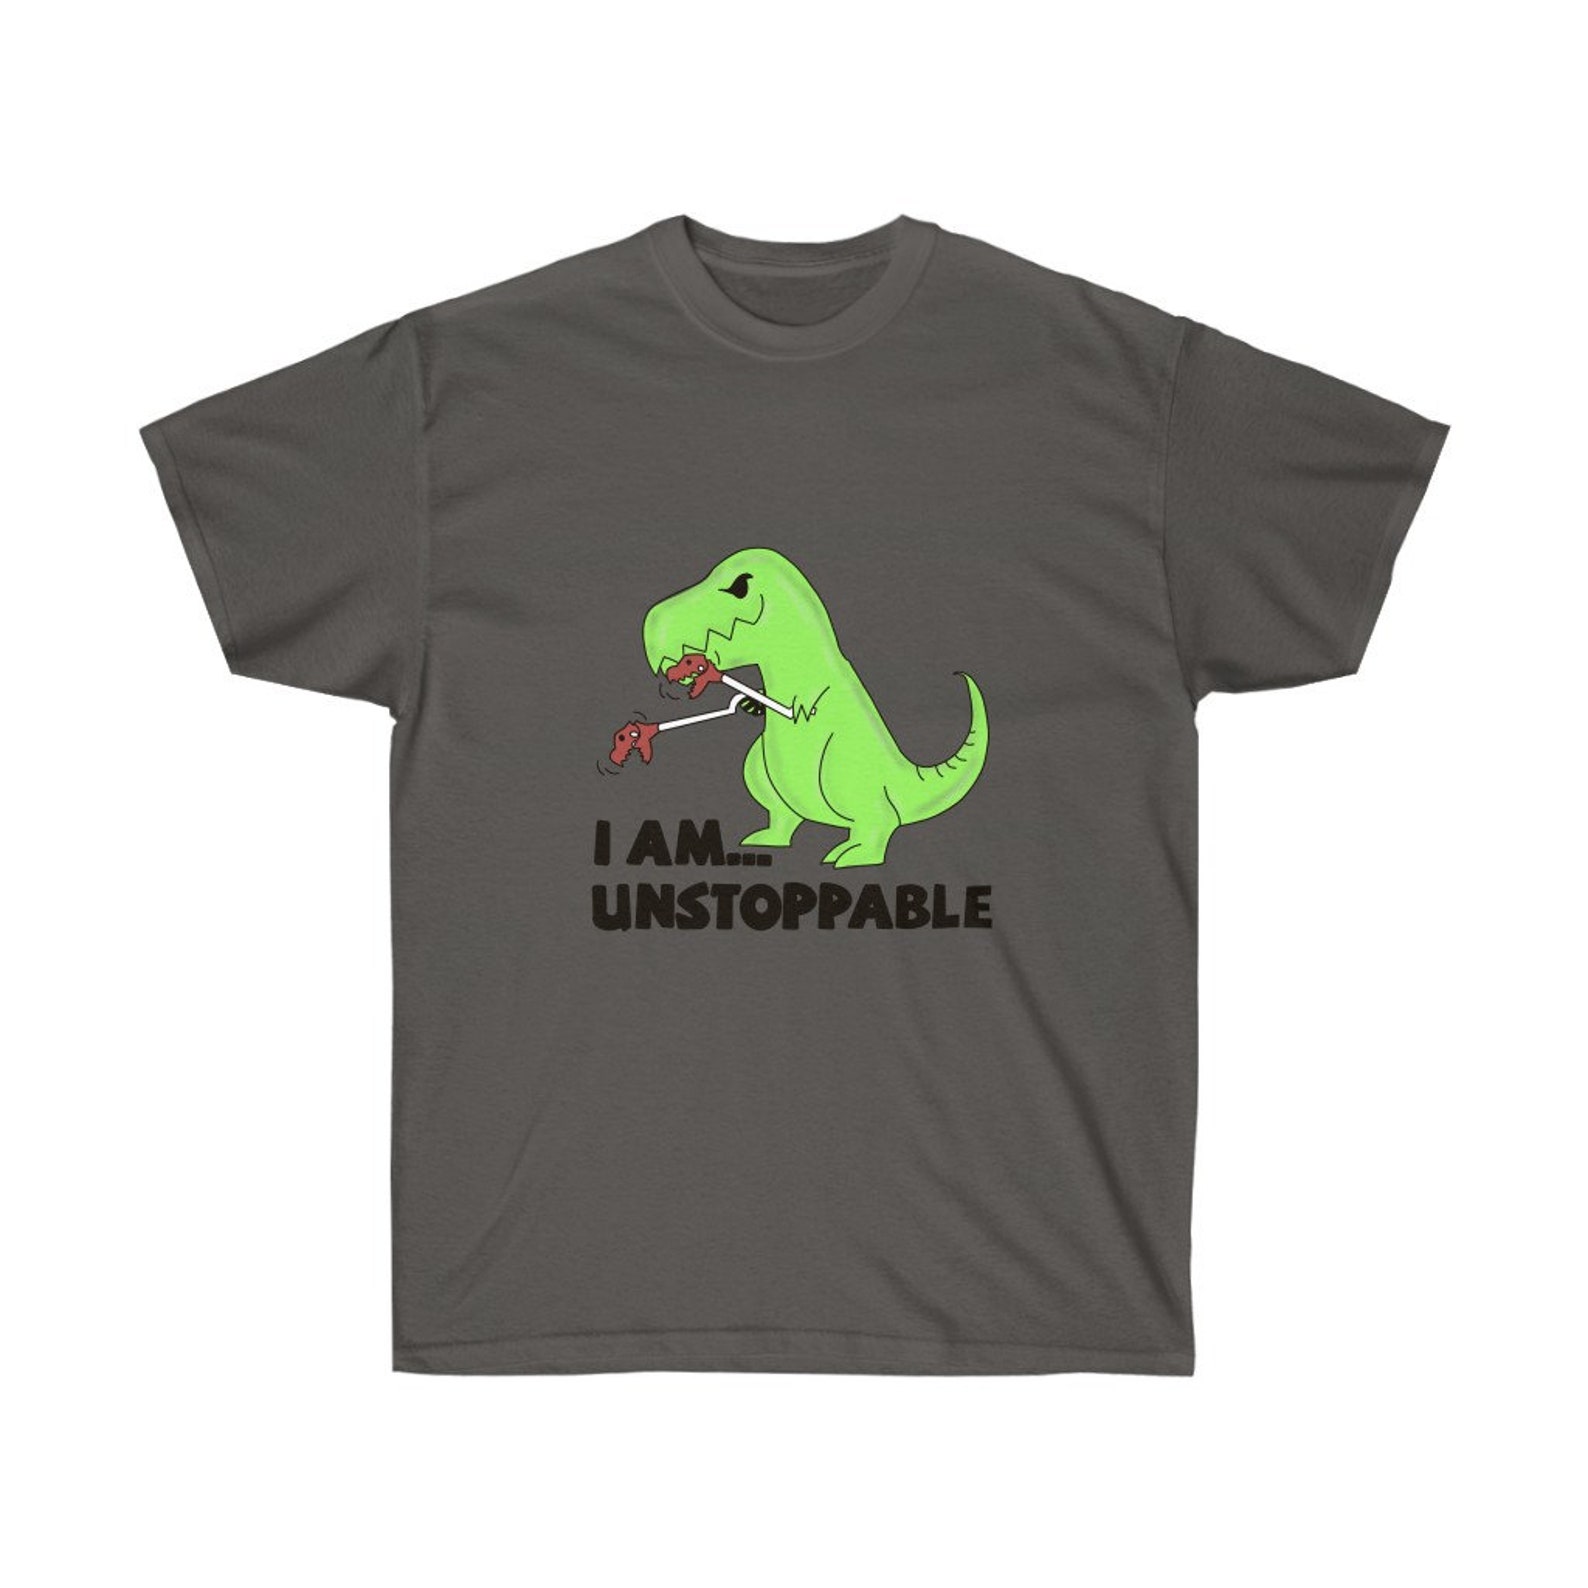 T-Rex T-Shirt with Green Dinosaur Shirt for Women T-Shirt Men | Etsy